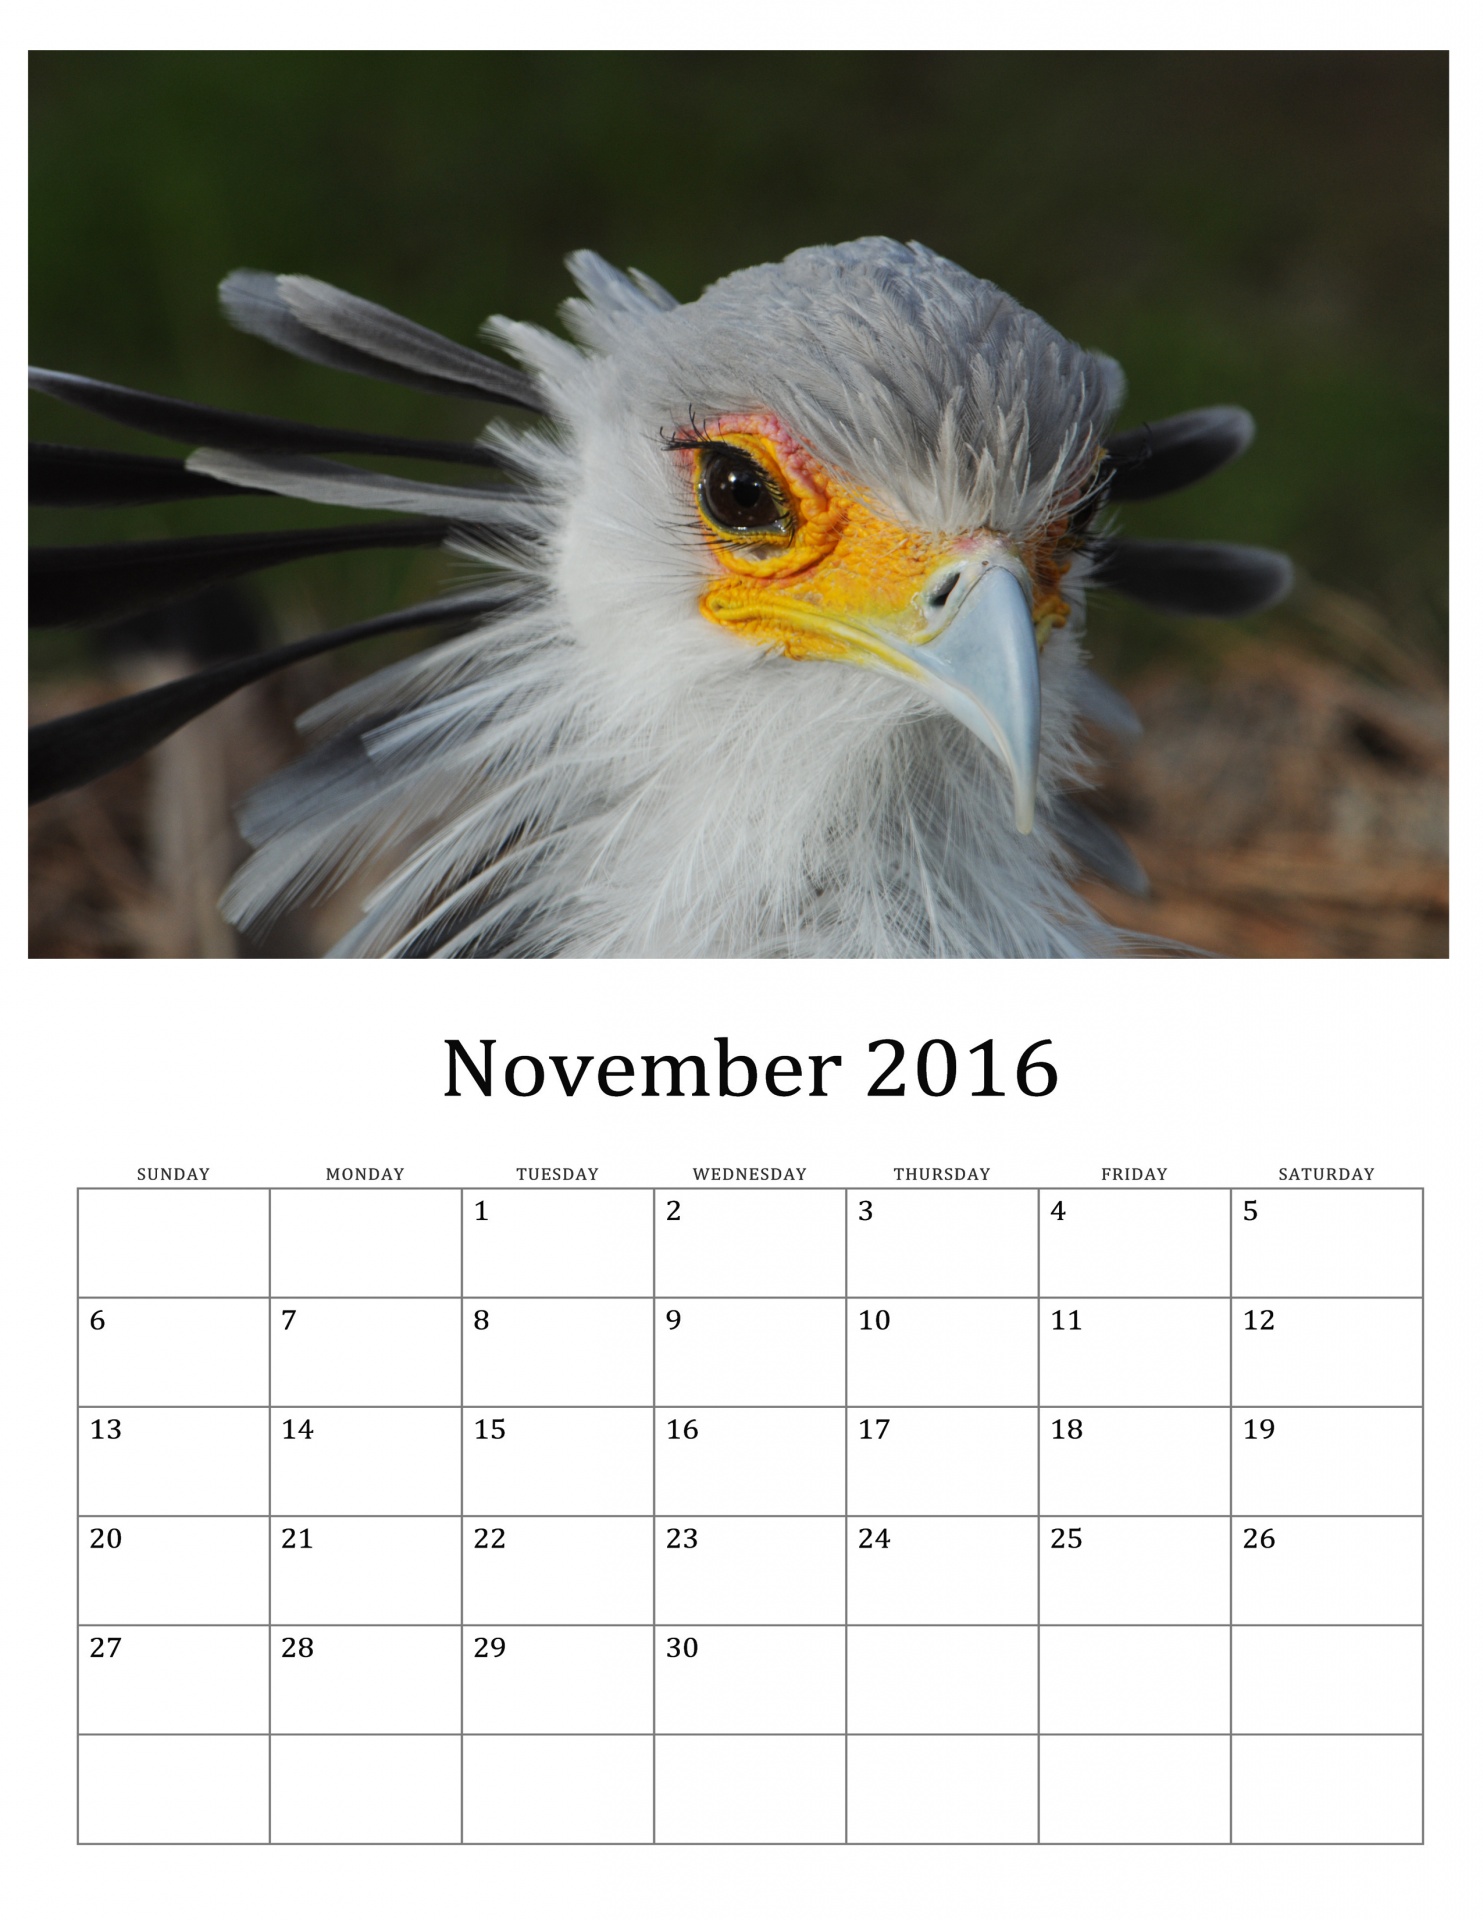 November 2016 Calendar Of Birds